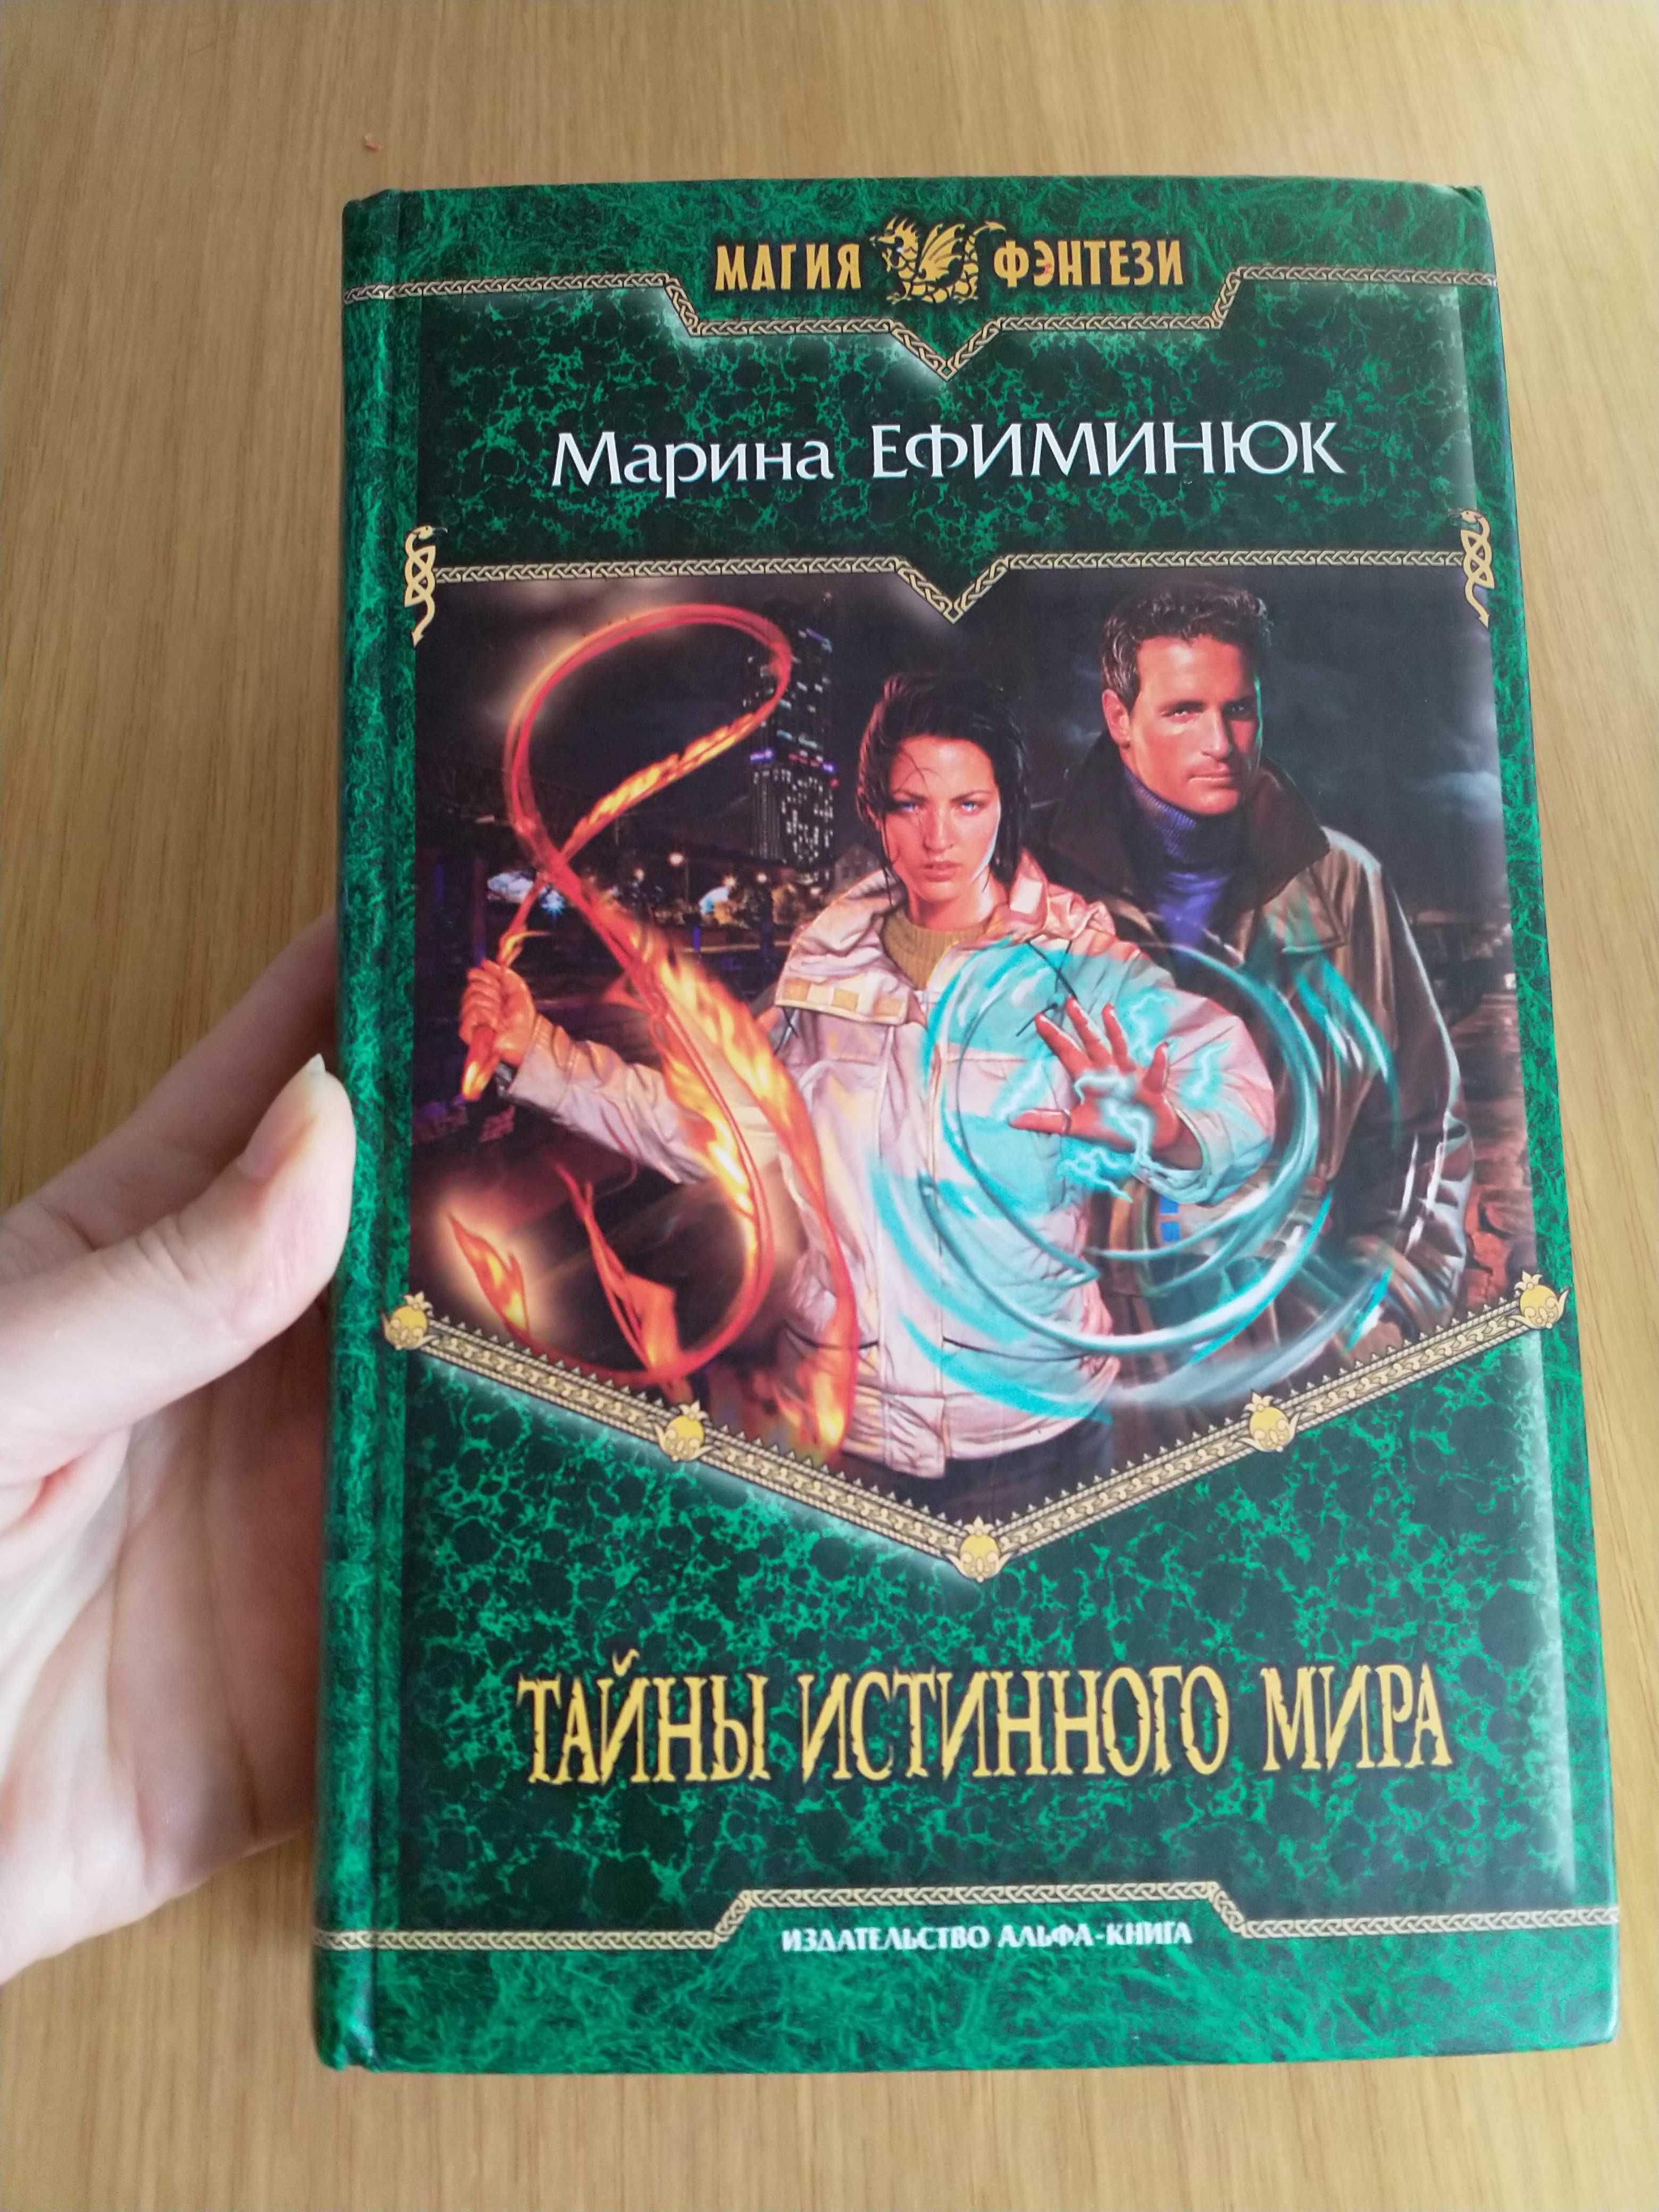 "Тайны истинного мира", Магия & Фэнтези, М. Ефиминюк